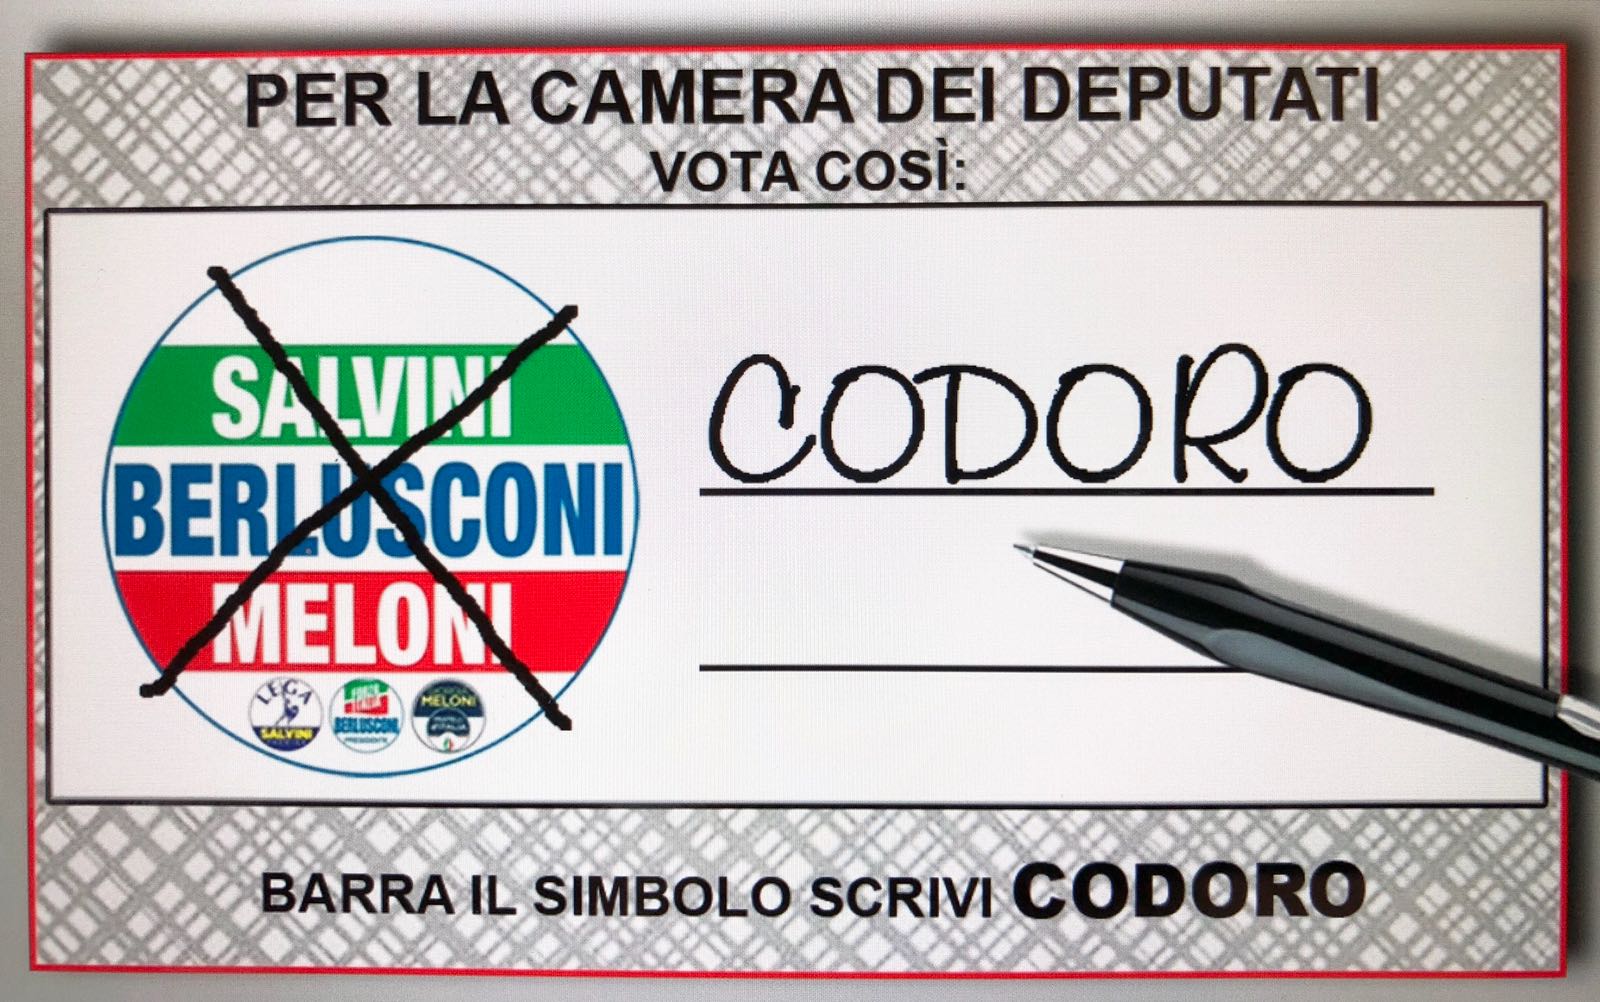 Italianët e Shqipërisë votojnë për zgjedhjet parlamentare: vetëm Garavini (PD) dhe Codoro (FI) vizitojnë Shqipërinë